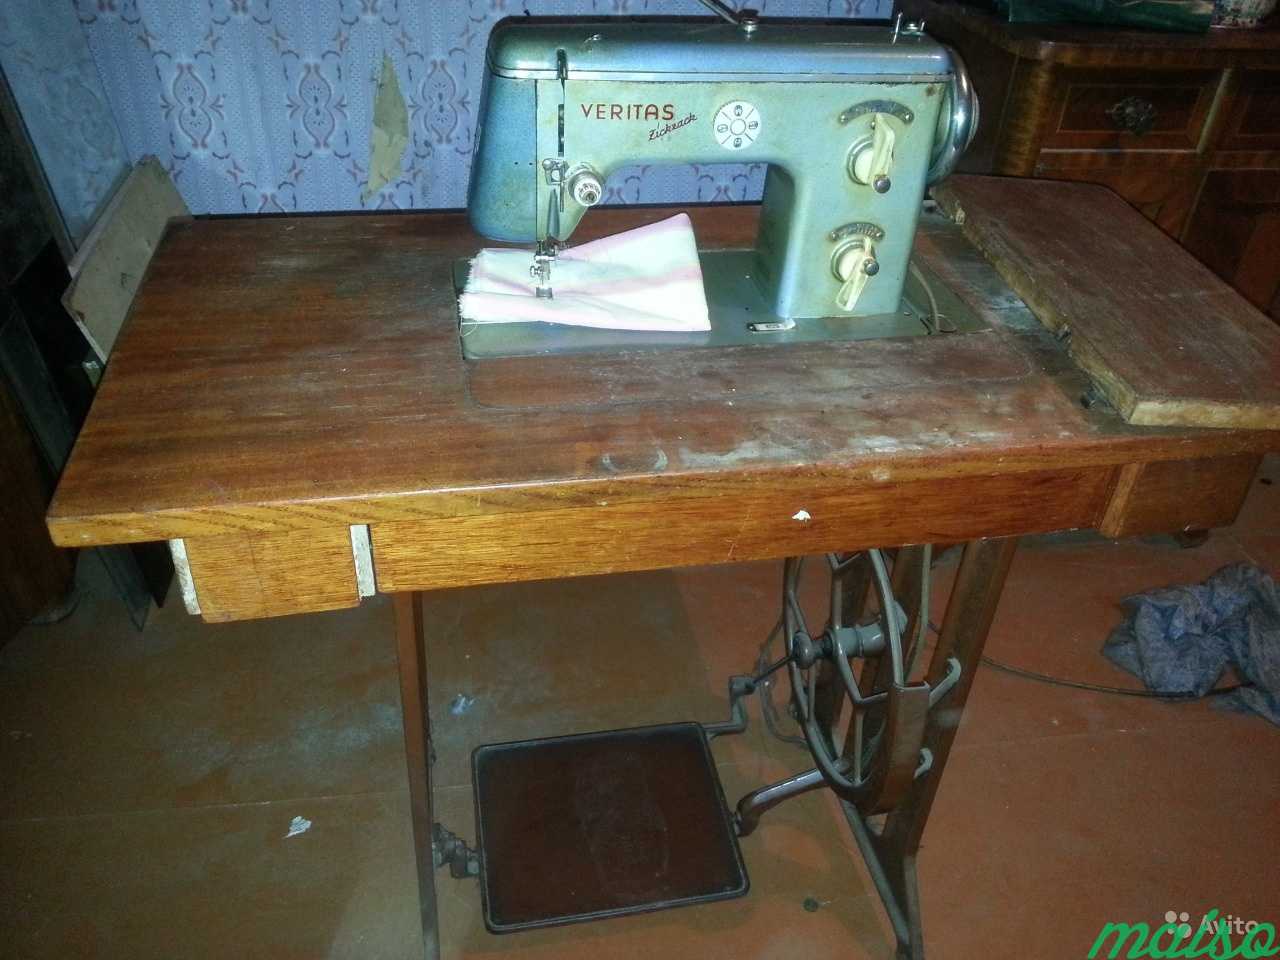 Швейная машинка Веритас 8014 с ножным приводом